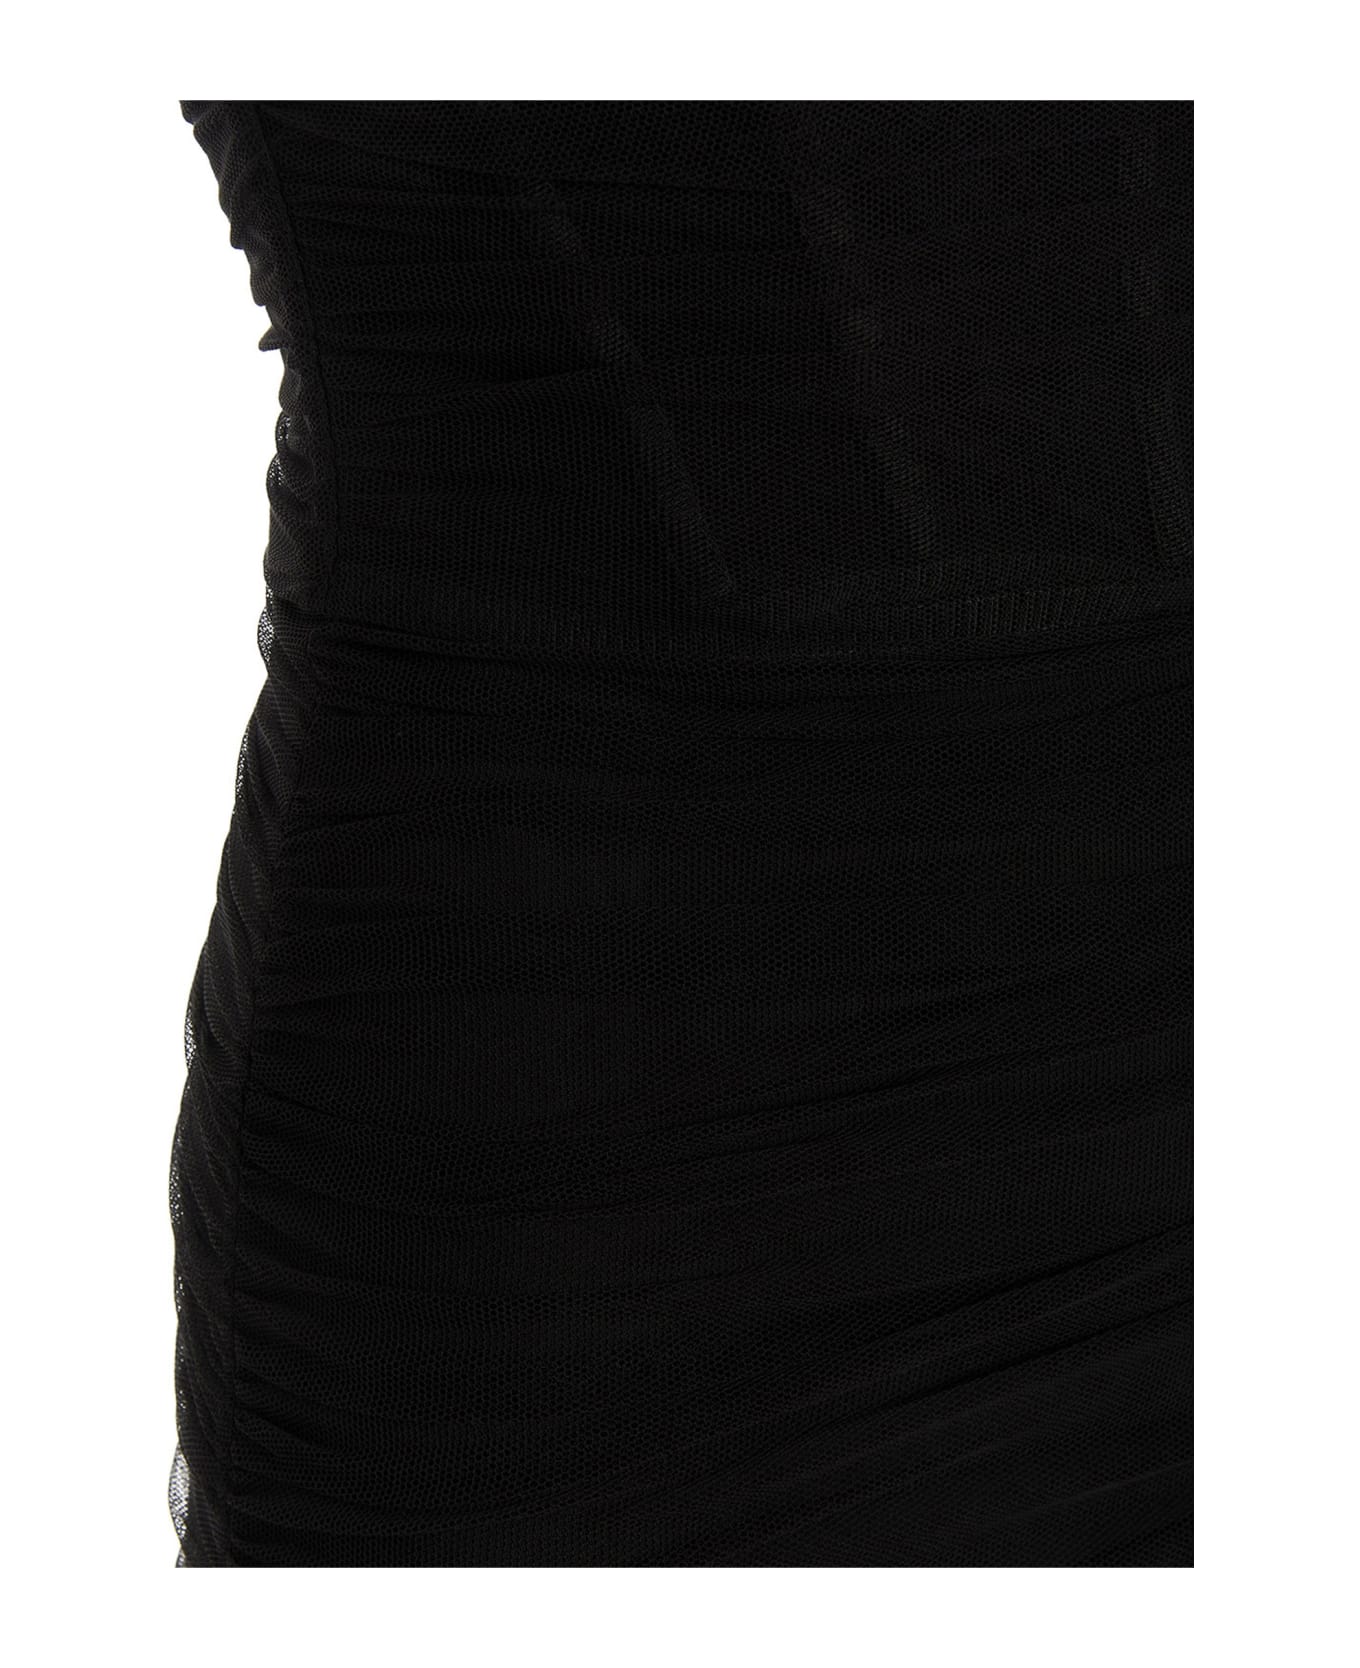 19:13 Dresscode Tulle Dress - Black  